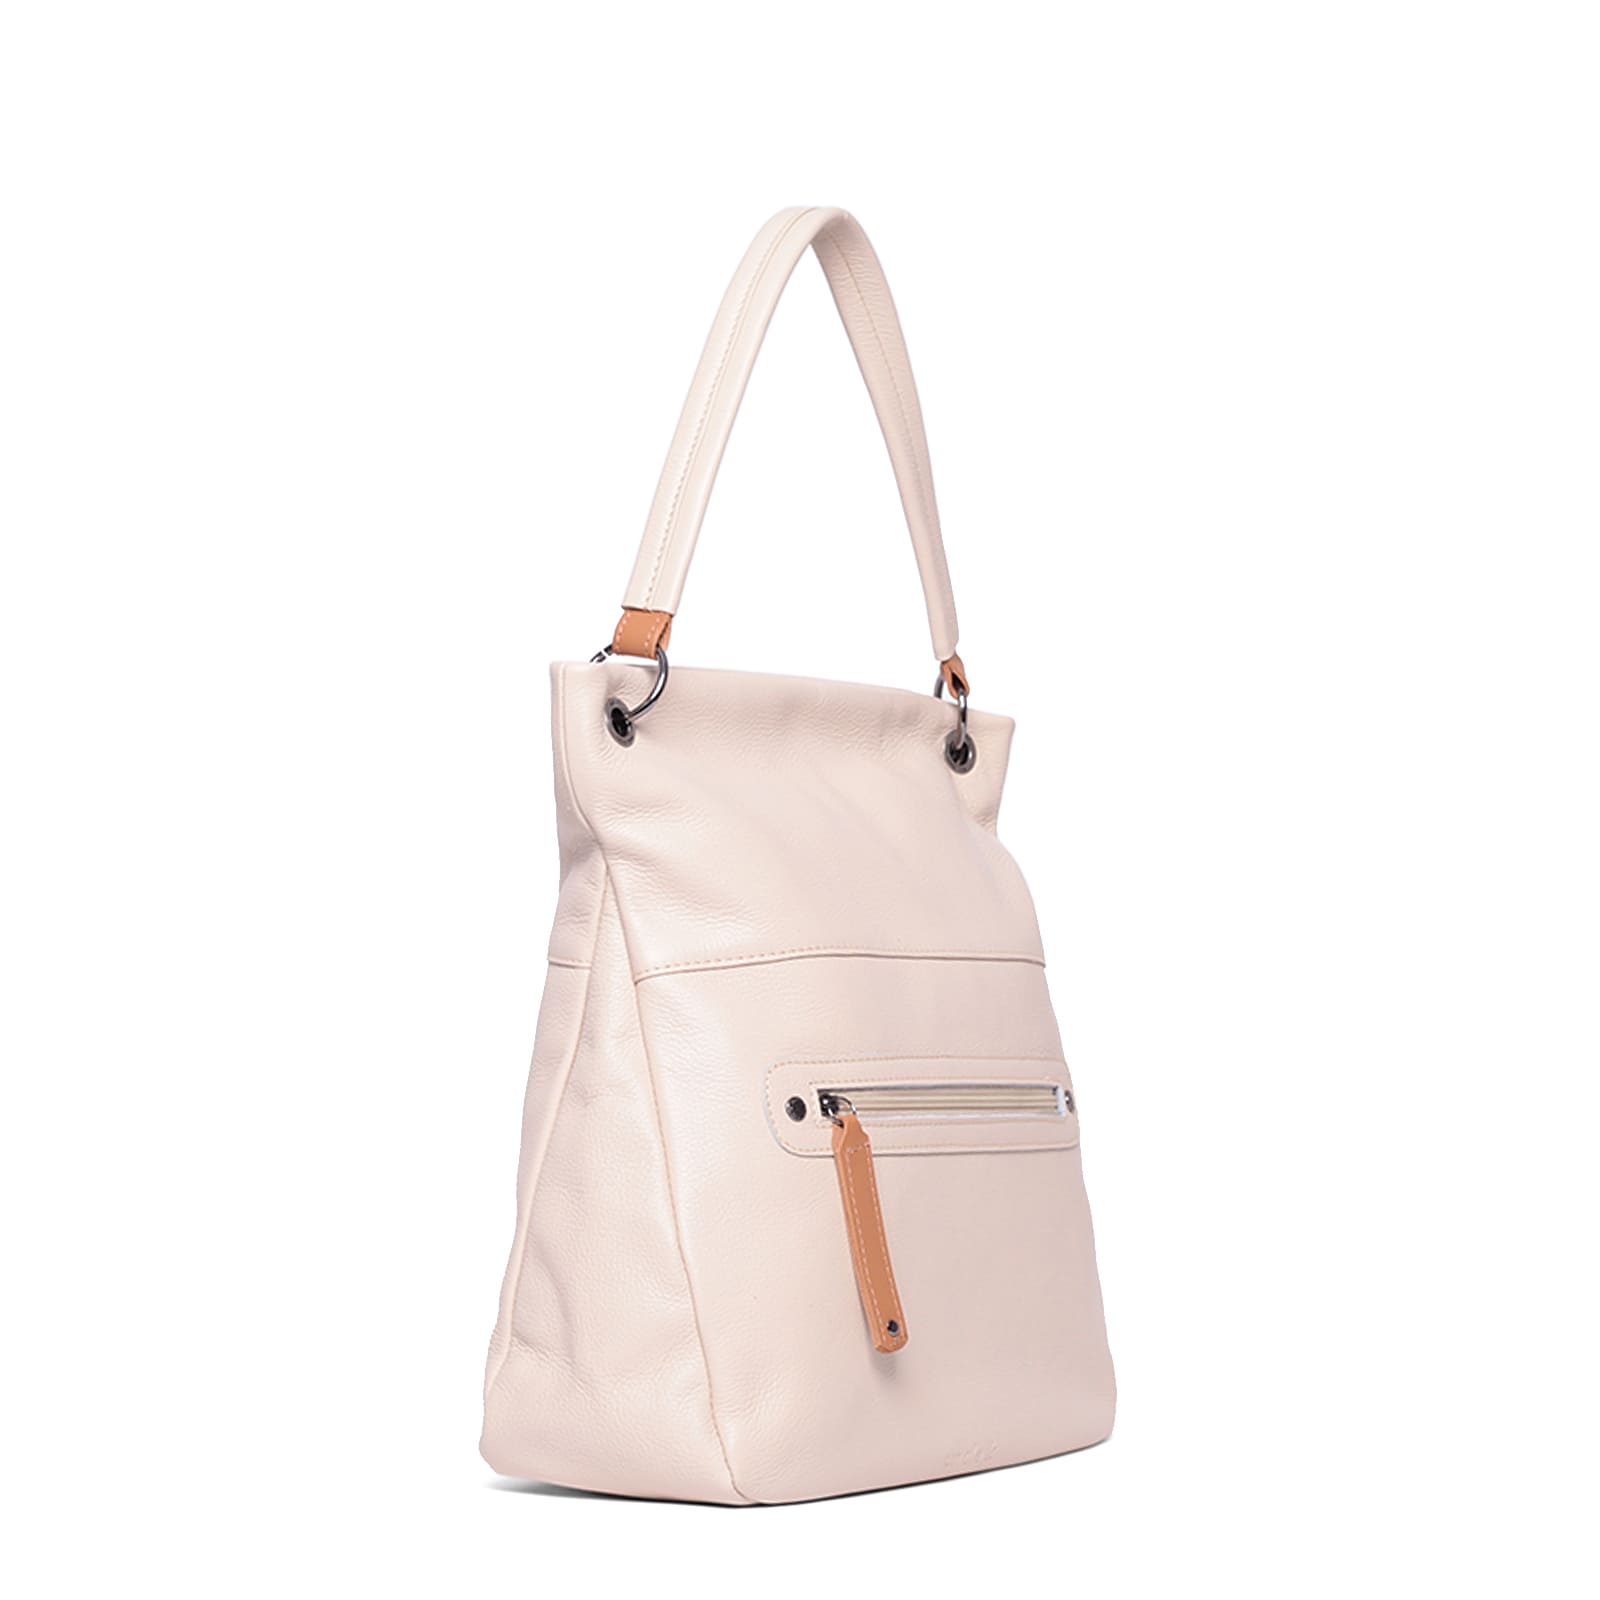 bolsa-shopping-bag-couro-61105-v24-off-white-2